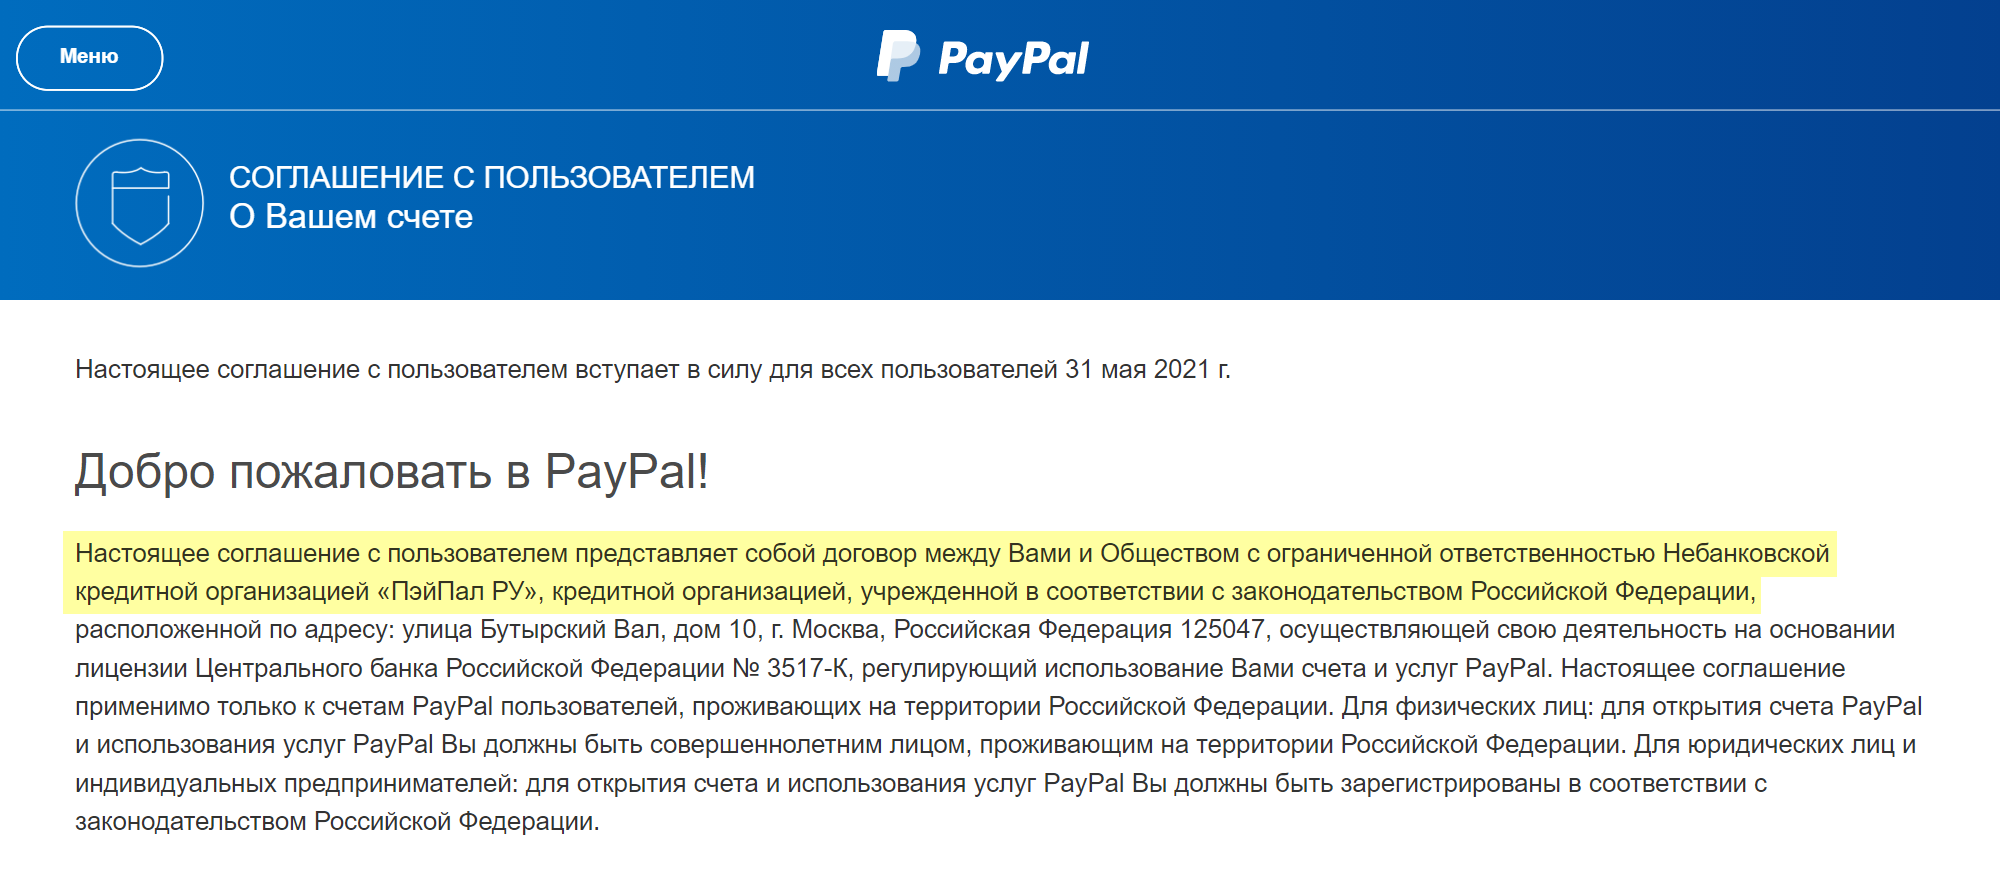 Чтобы проверить, какой у вас PayPal, посмотрите соглашение с пользователем на сайте сервиса. Если там указано общество с ограниченной ответственностью небанковская кредитная организация «ПэйПал⁠-⁠ру» — то все в порядке